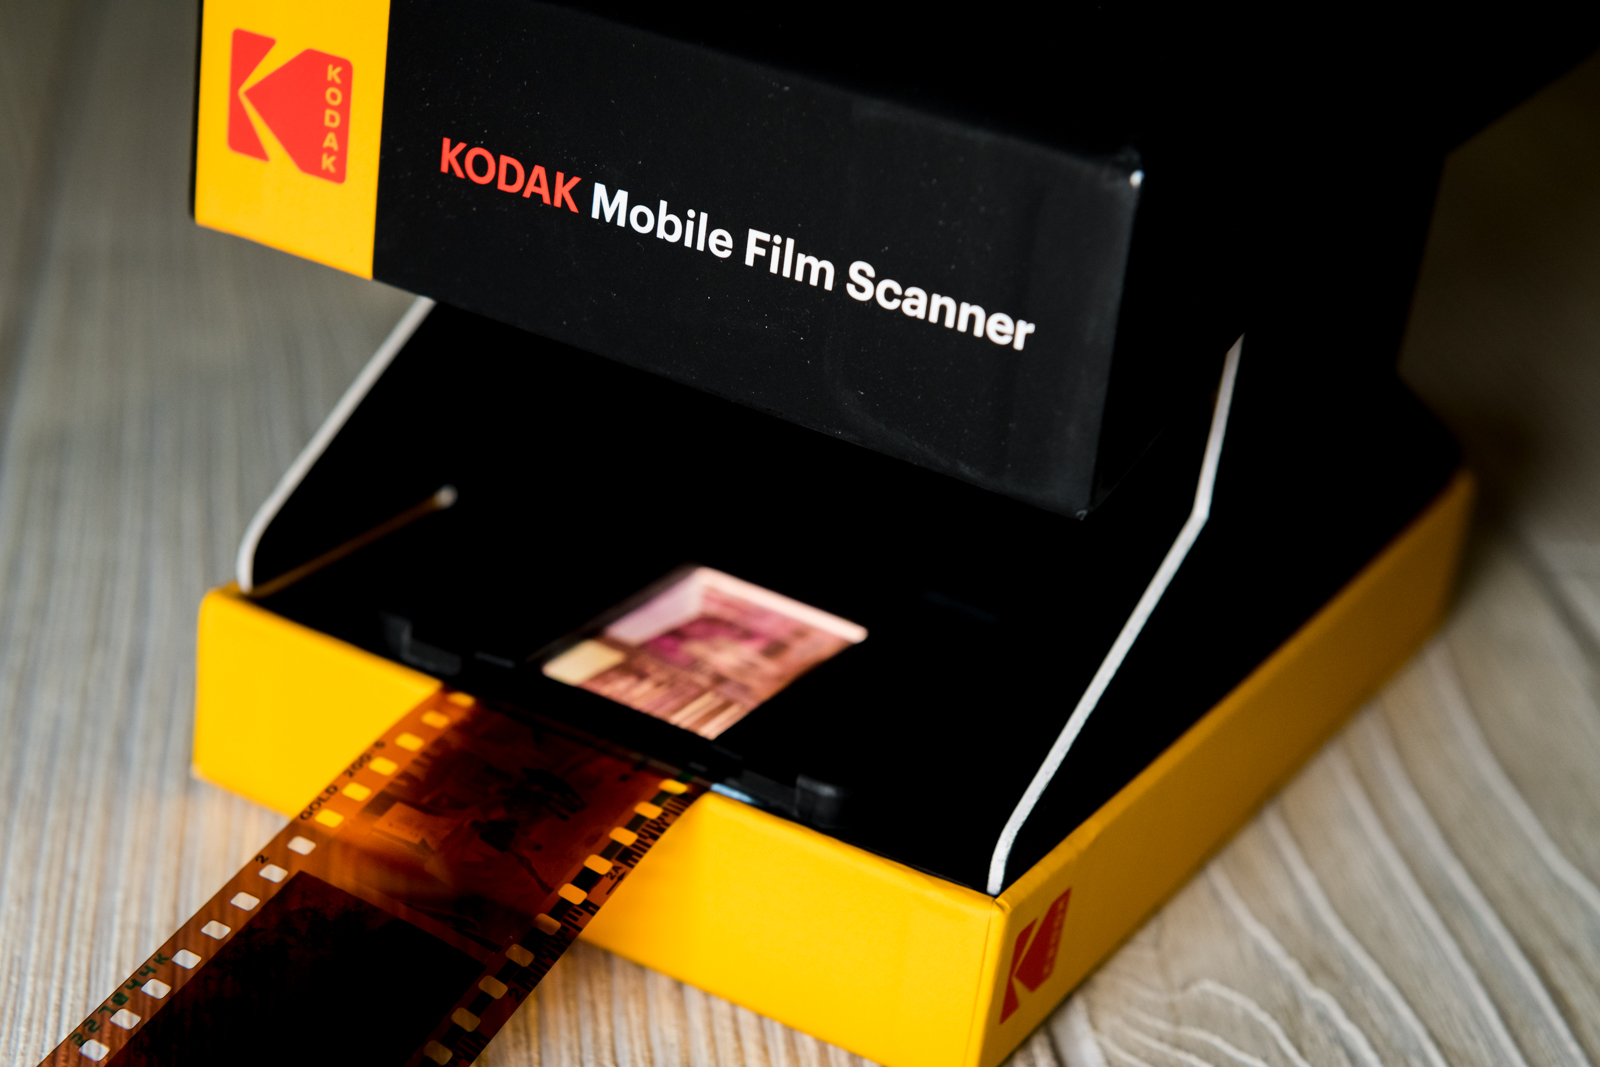 KODAK Mobile Film Scanner